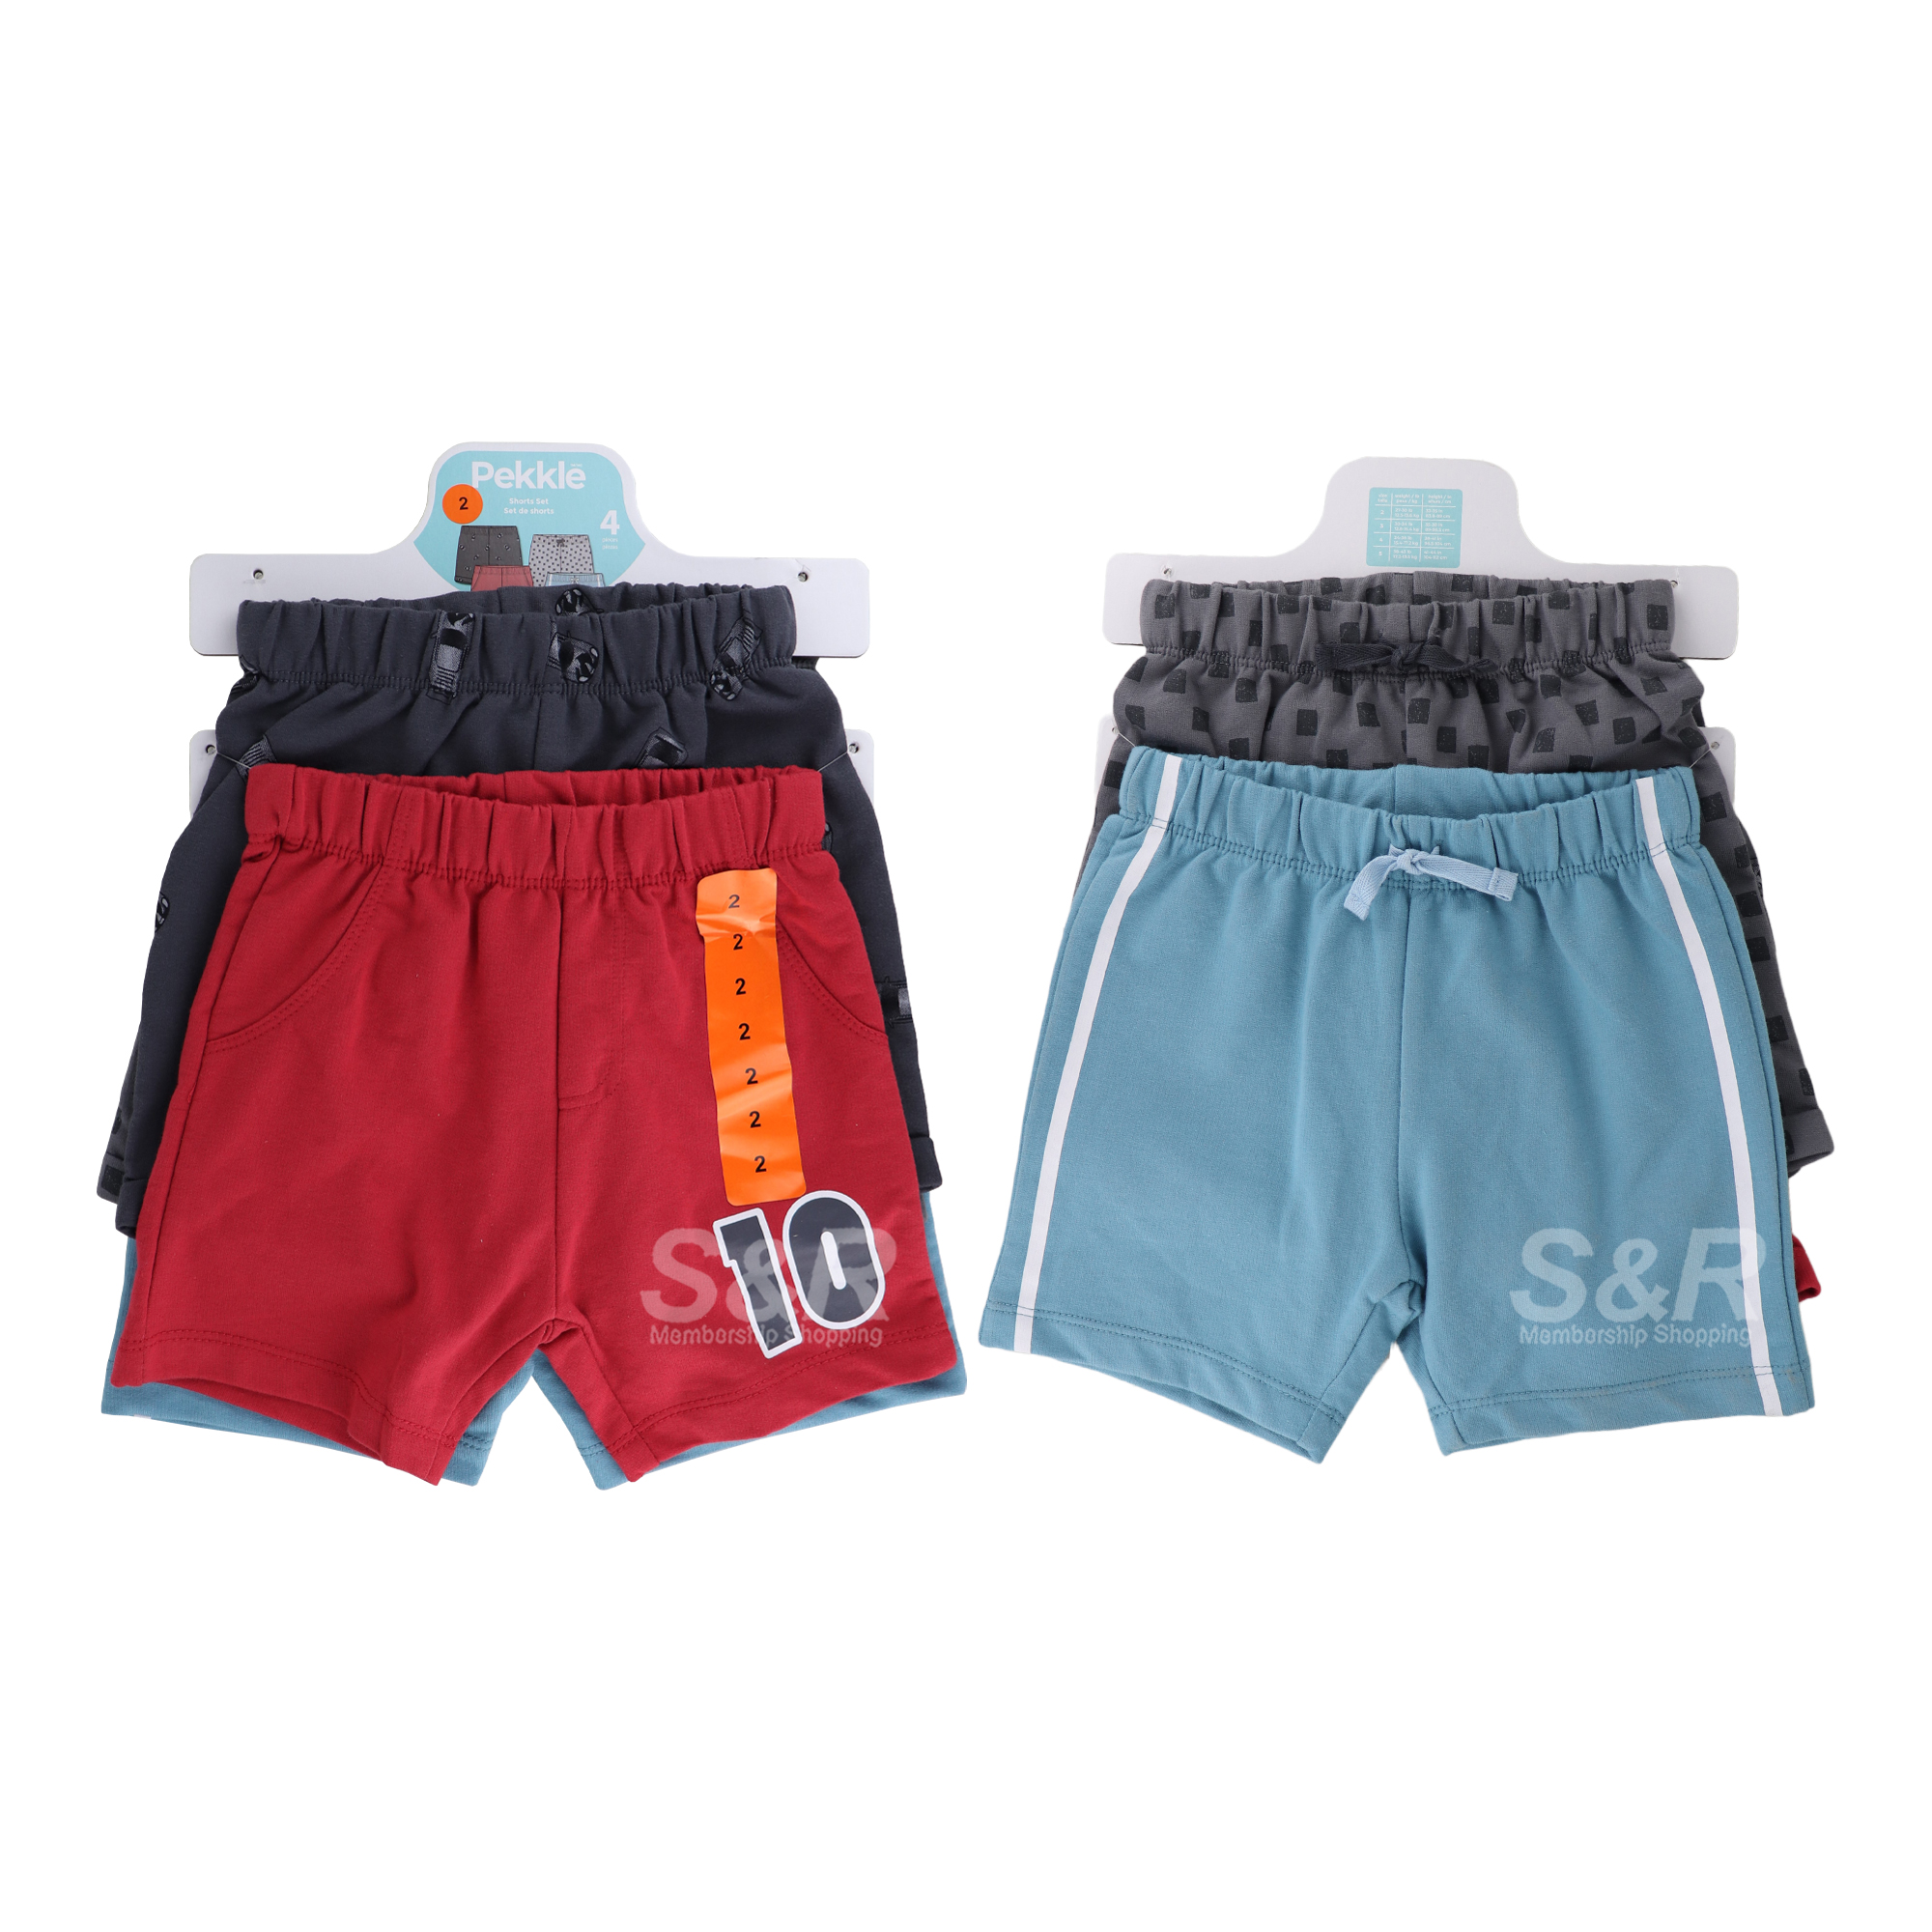 Pekkle Boys Assorted Shorts 4 pcs set